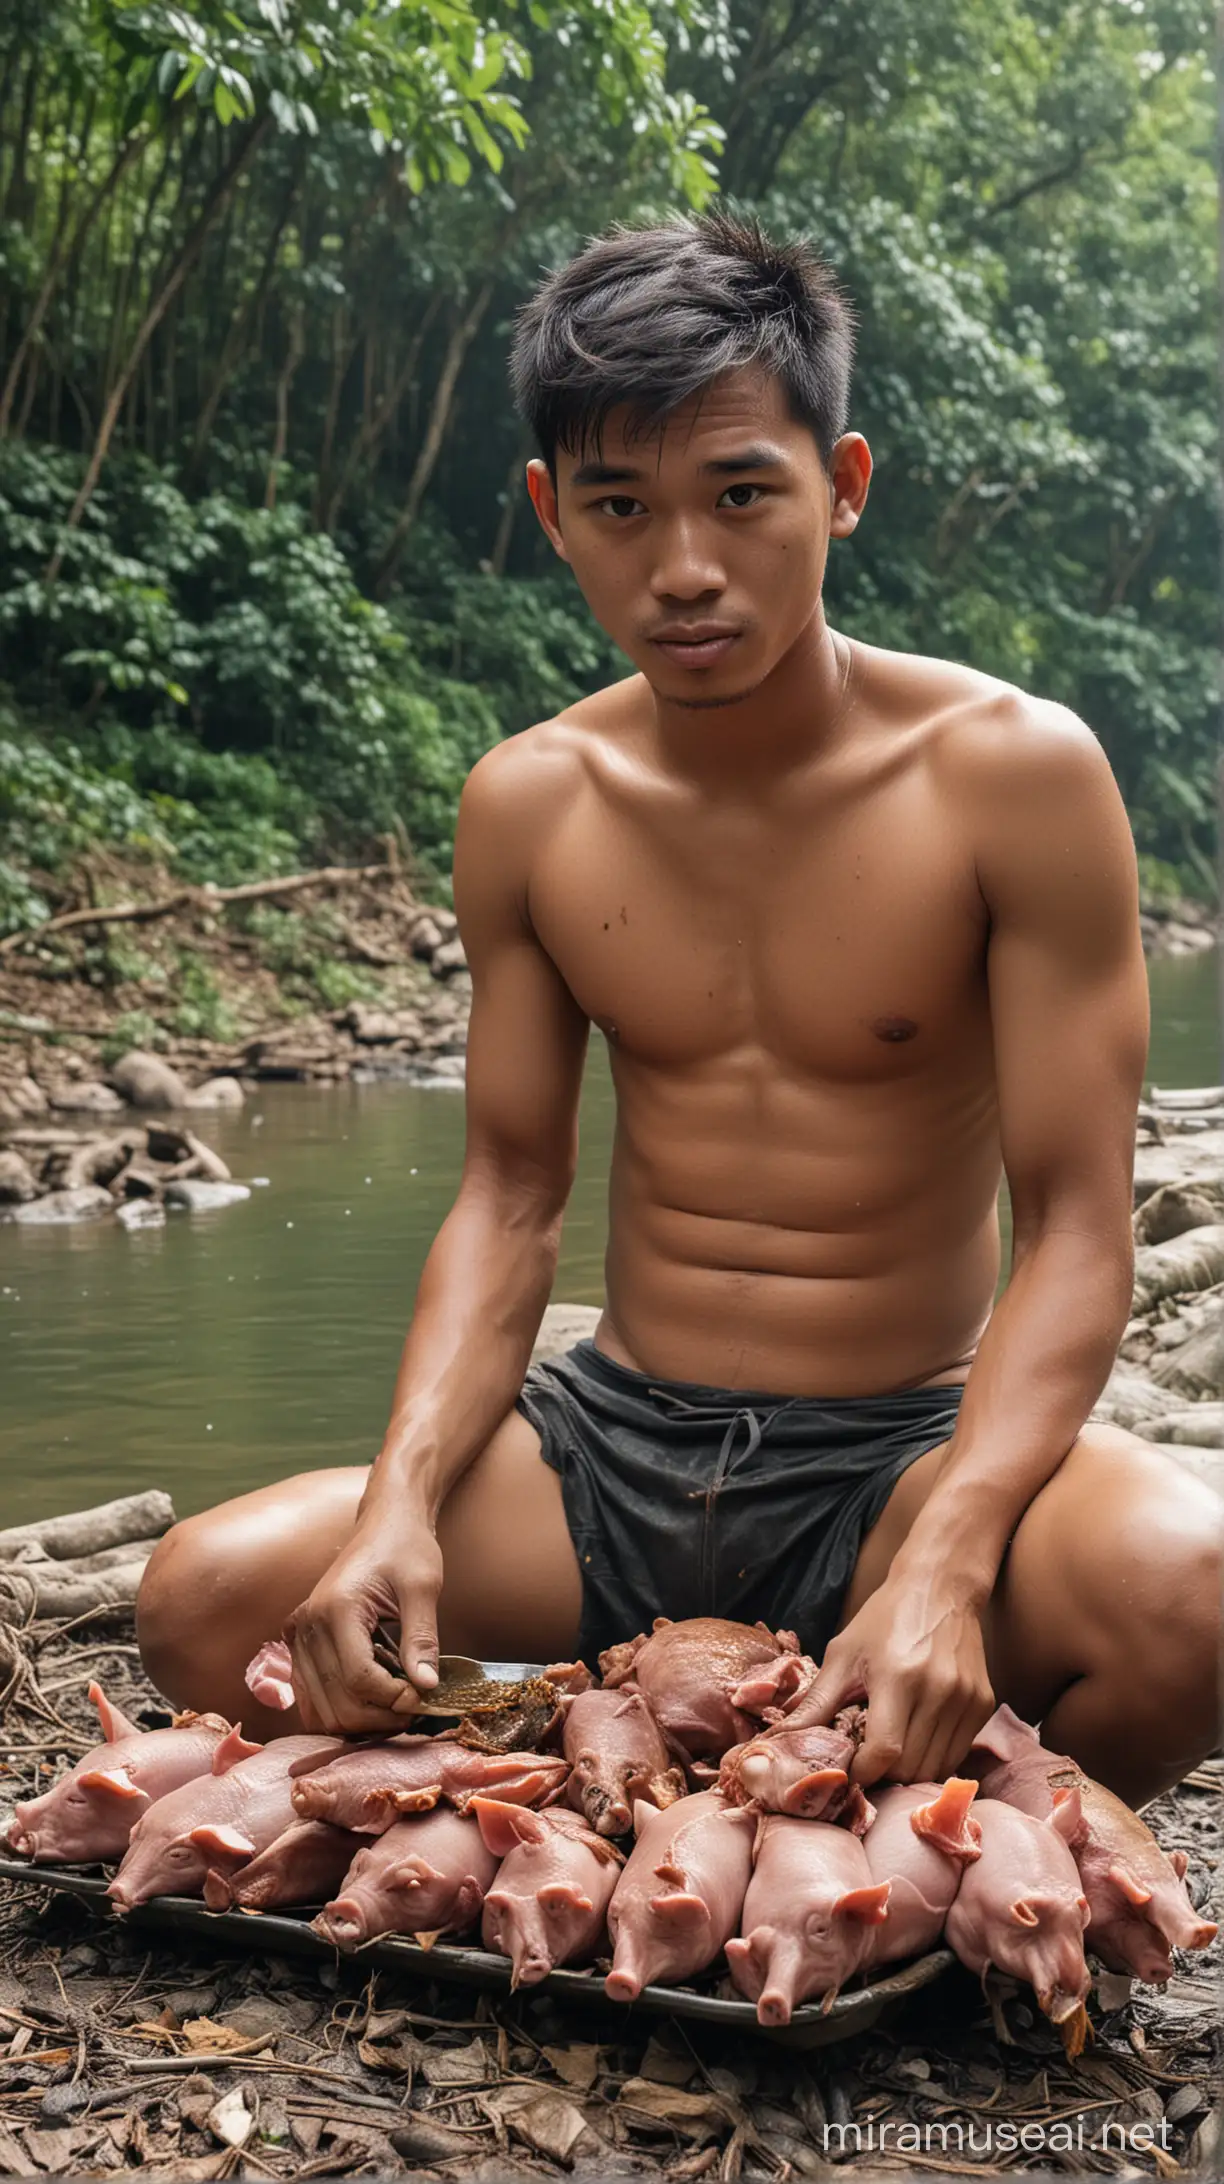 Seorang pria indonesia usia 24 tahun sedang memakan babi guling, di hutan dan ada sungai, tidak memakai baju, badan nya lusuh,cuma pakai celana dalam saja.